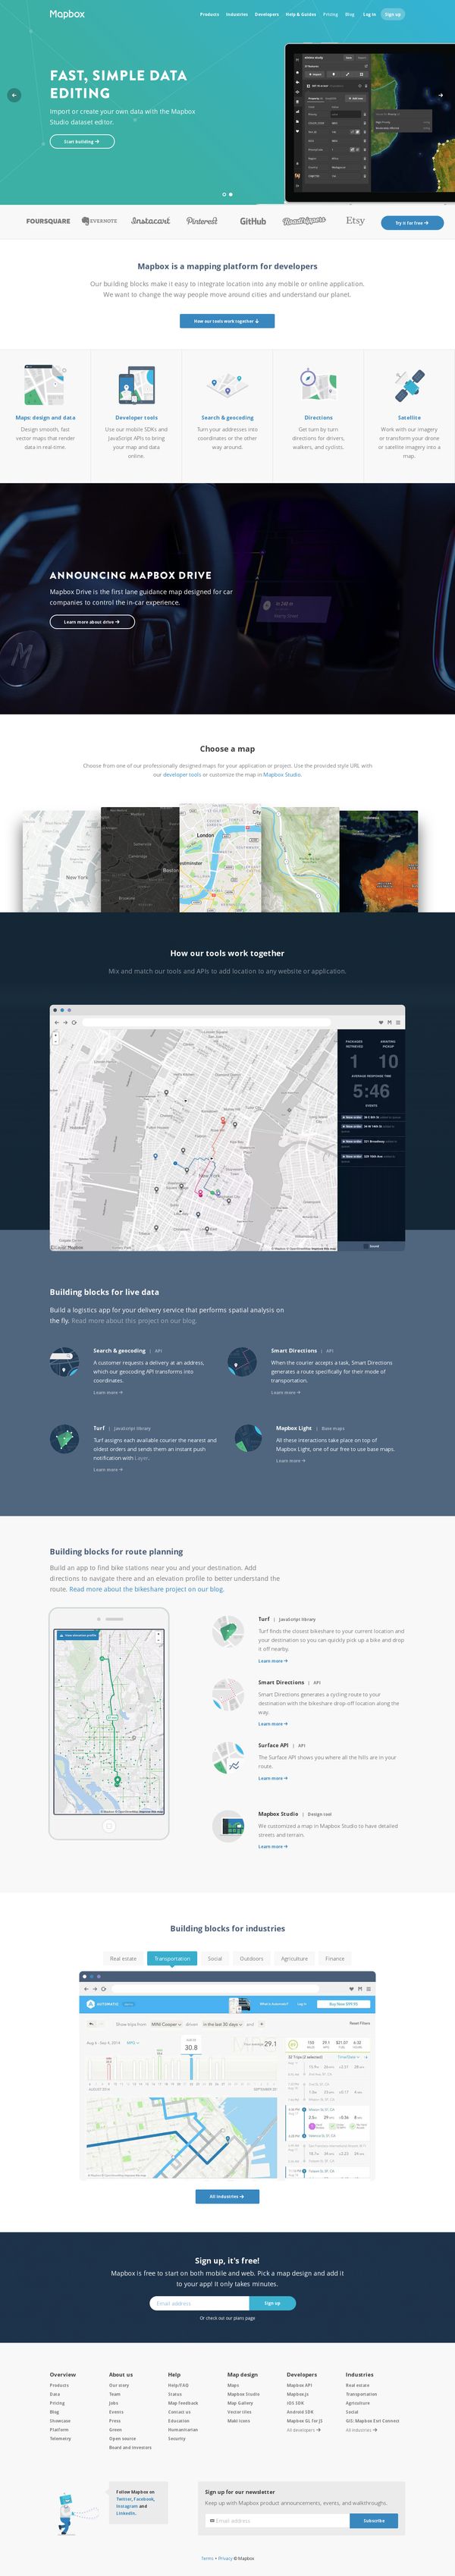 Mapbox | Design and publish beautiful maps